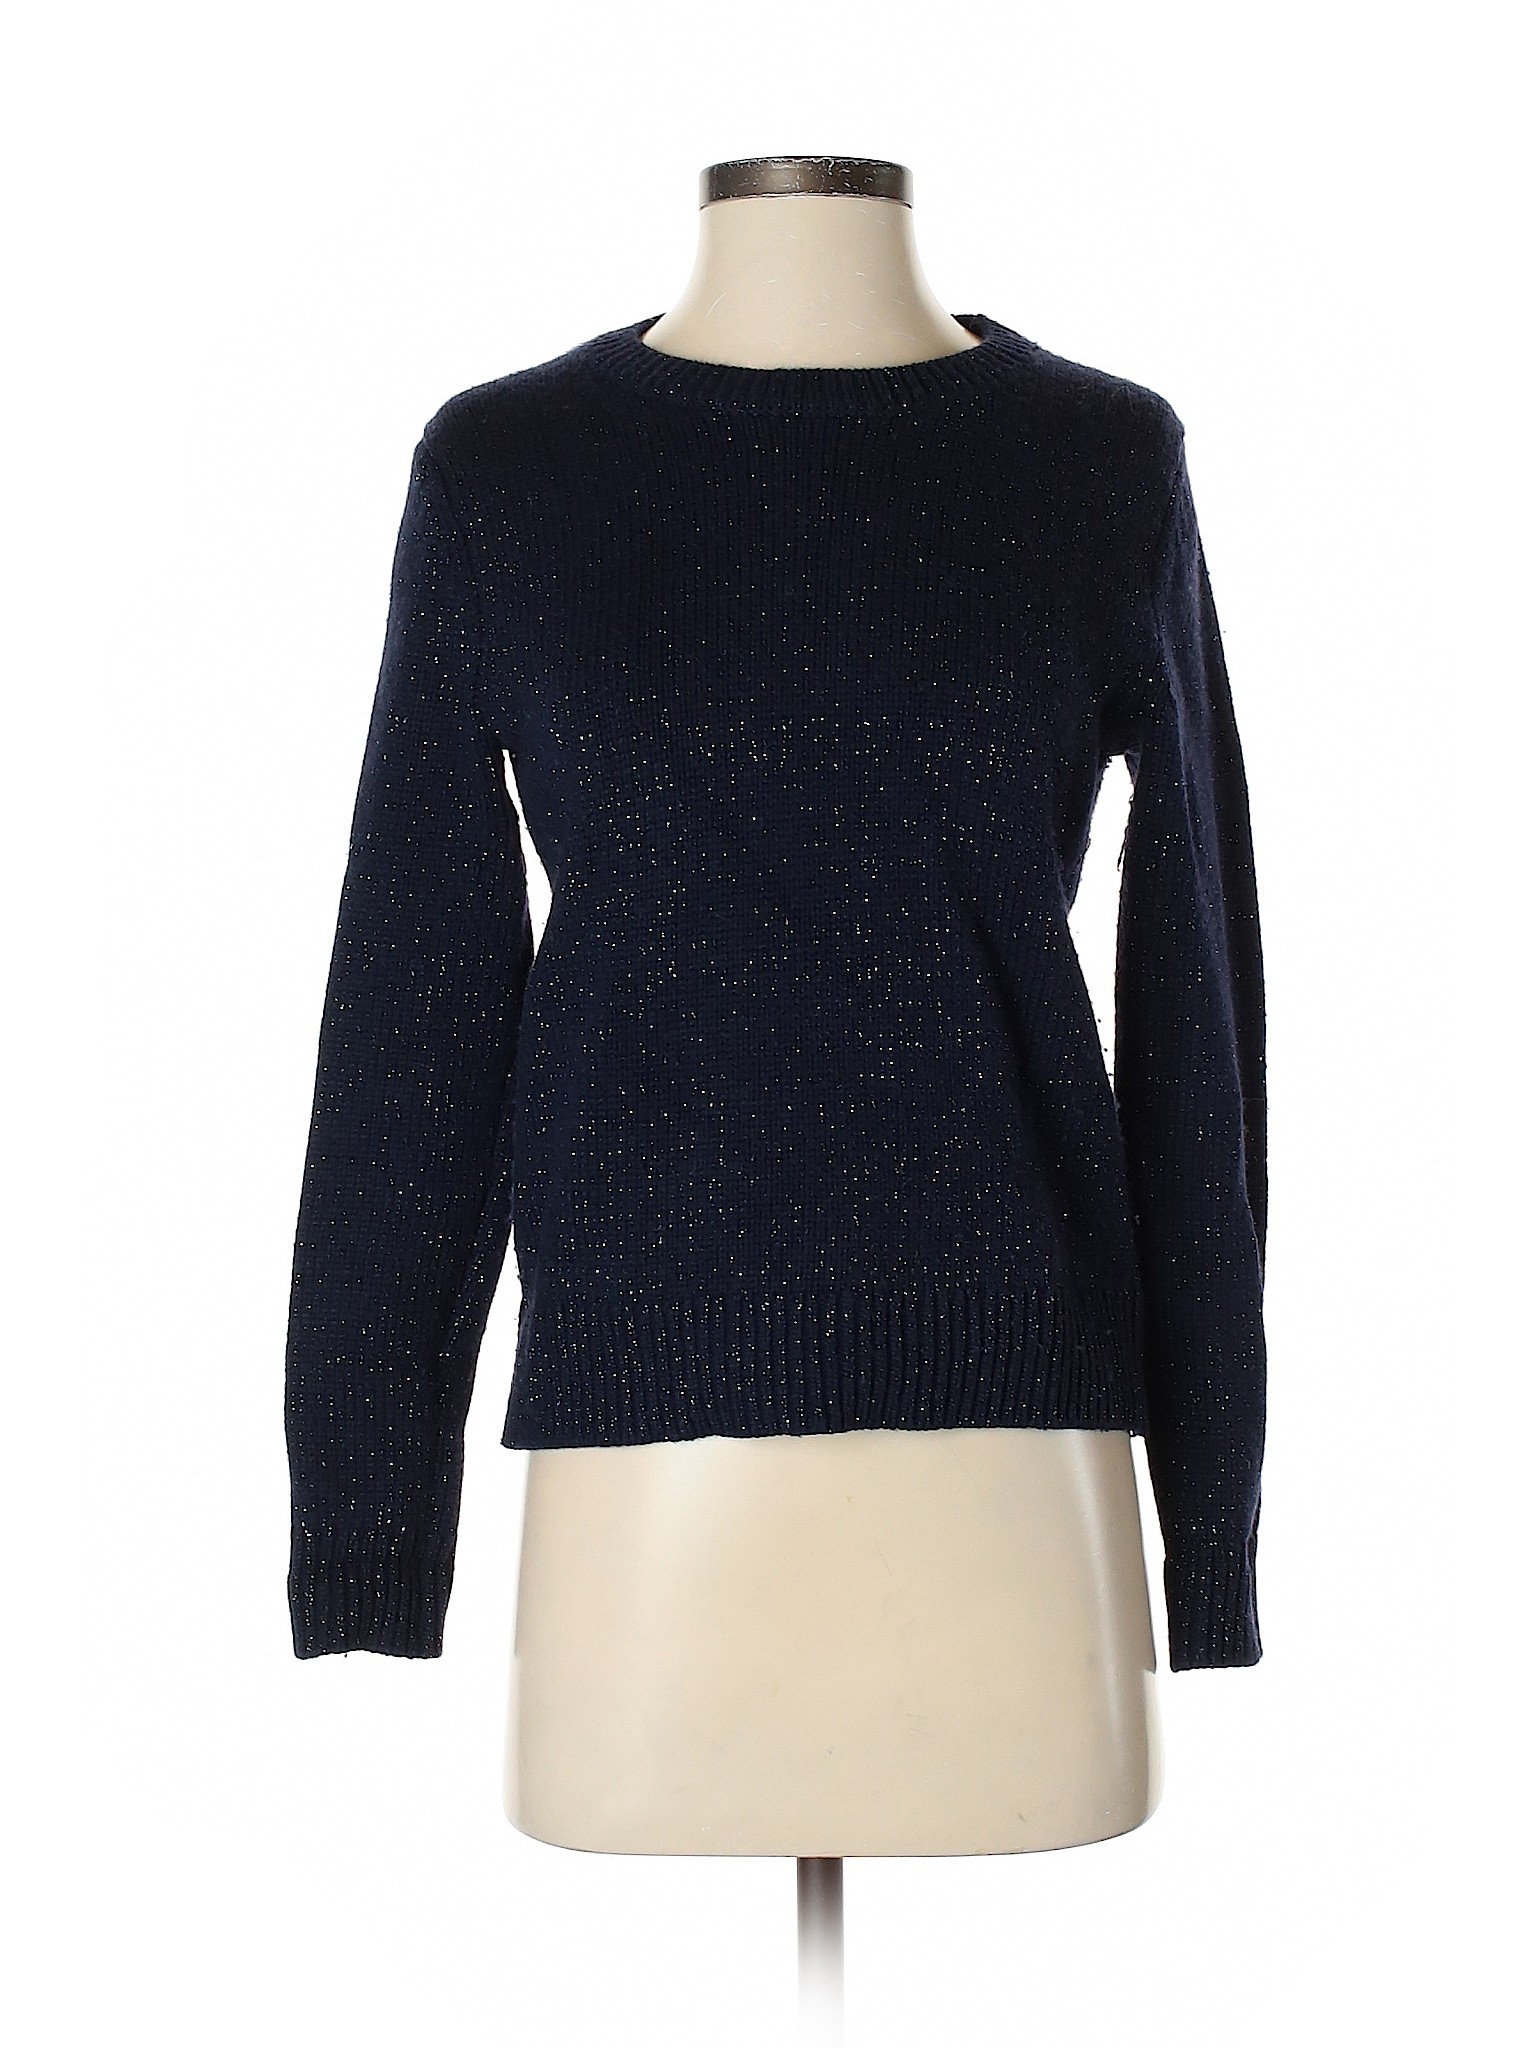 Gap Women Blue Pullover Sweater S | eBay